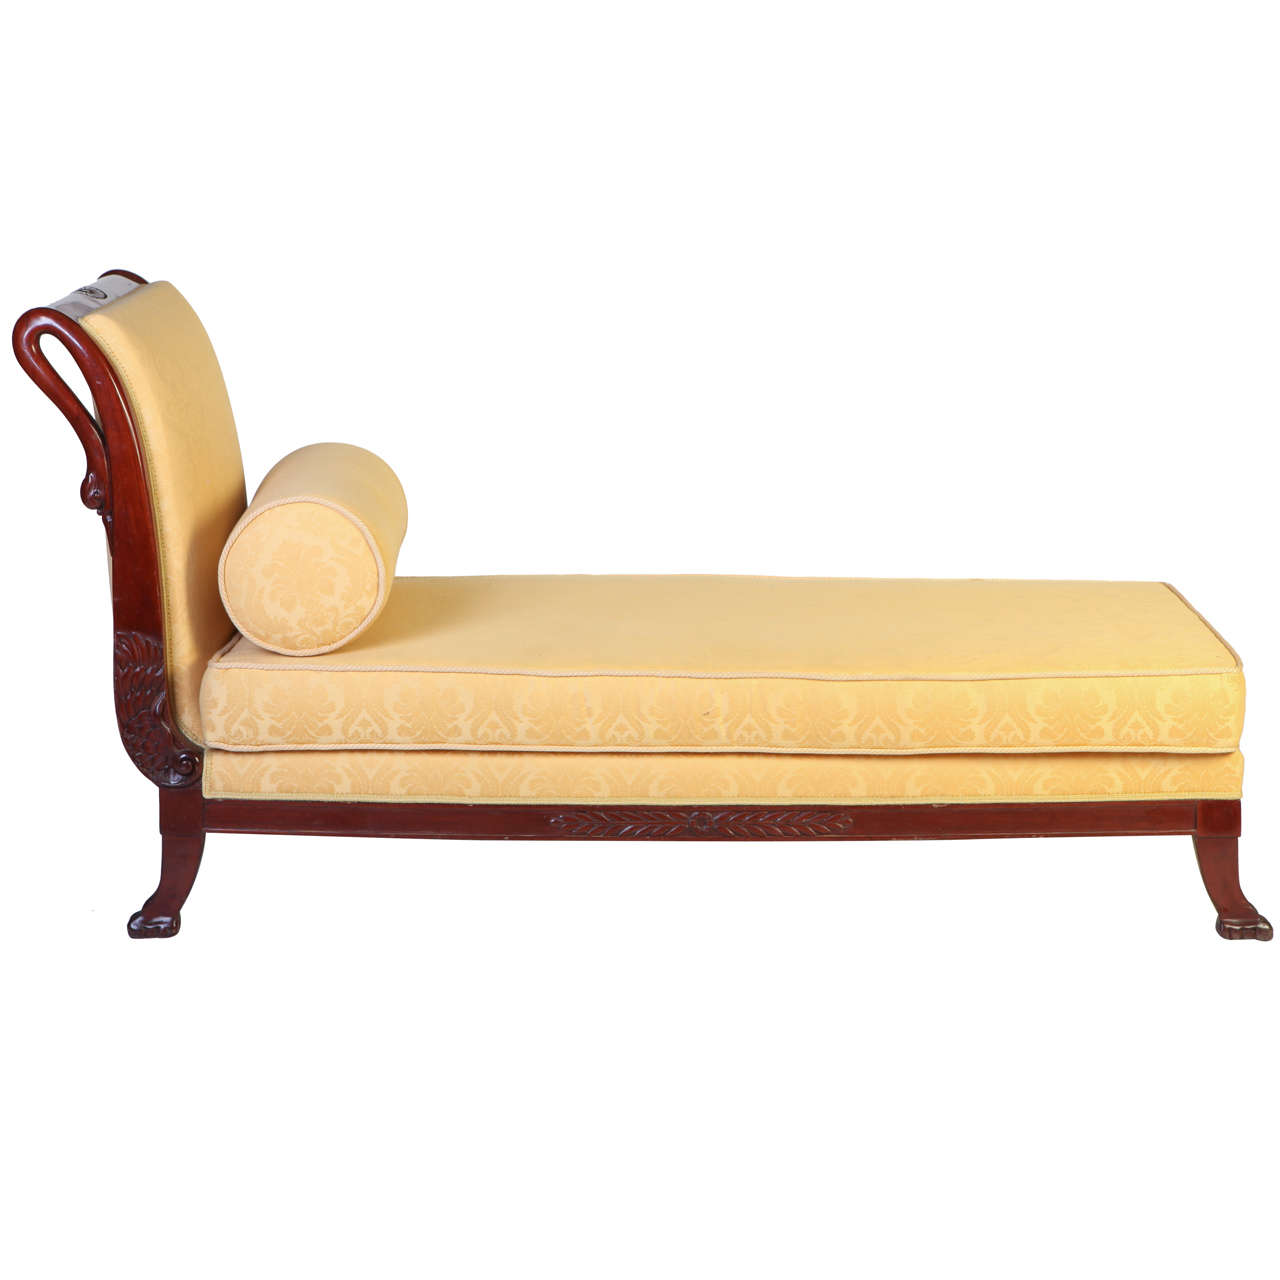 Italian 19th century Mahogany Swan Neck Sofa or Chais Longues Tuscany 1820 For Sale